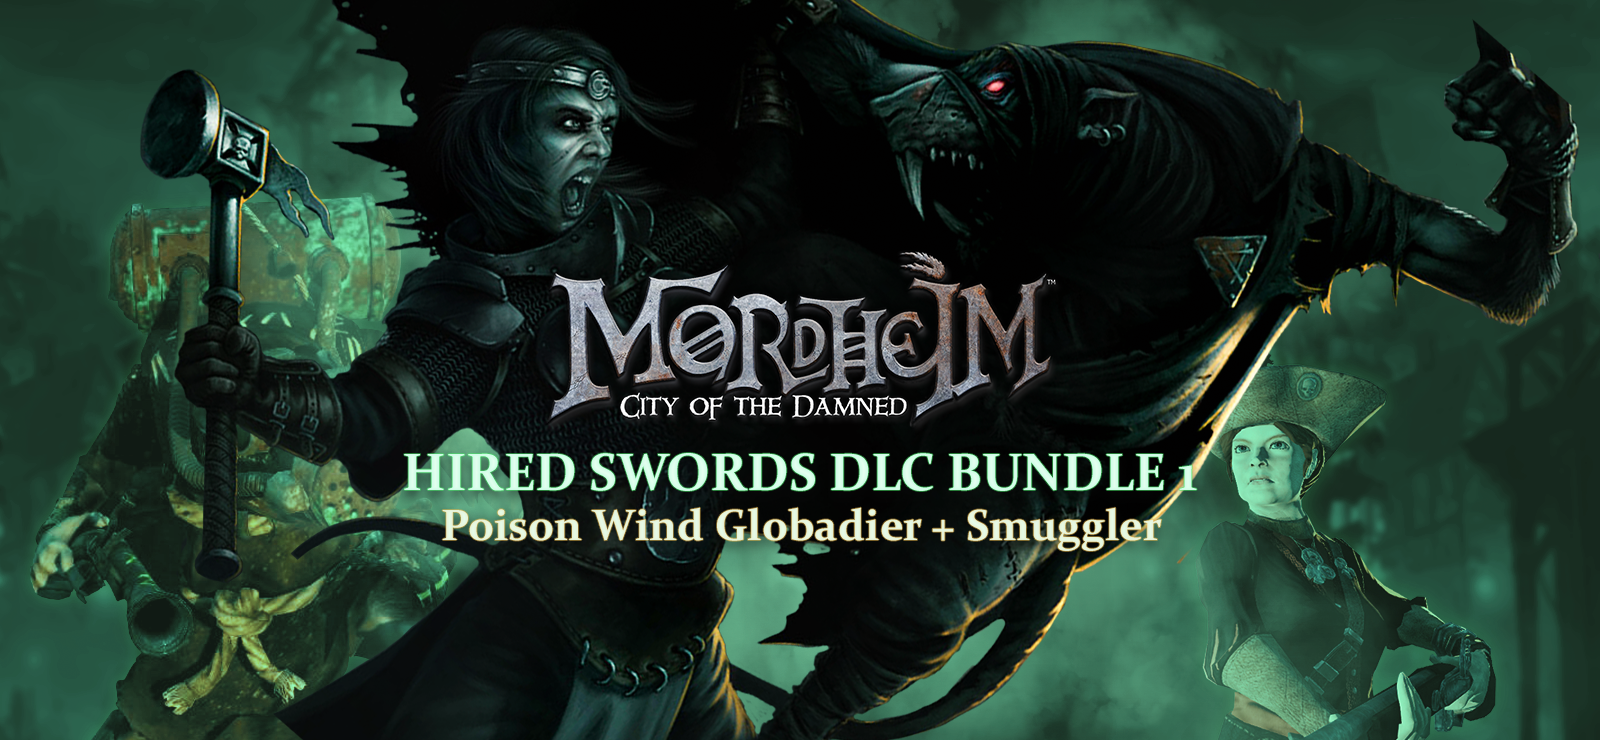 Mordheim: City Of The Damned - HIRED SWORDS DLC BUNDLE 1 - Poison Wind Globadier + Smuggler